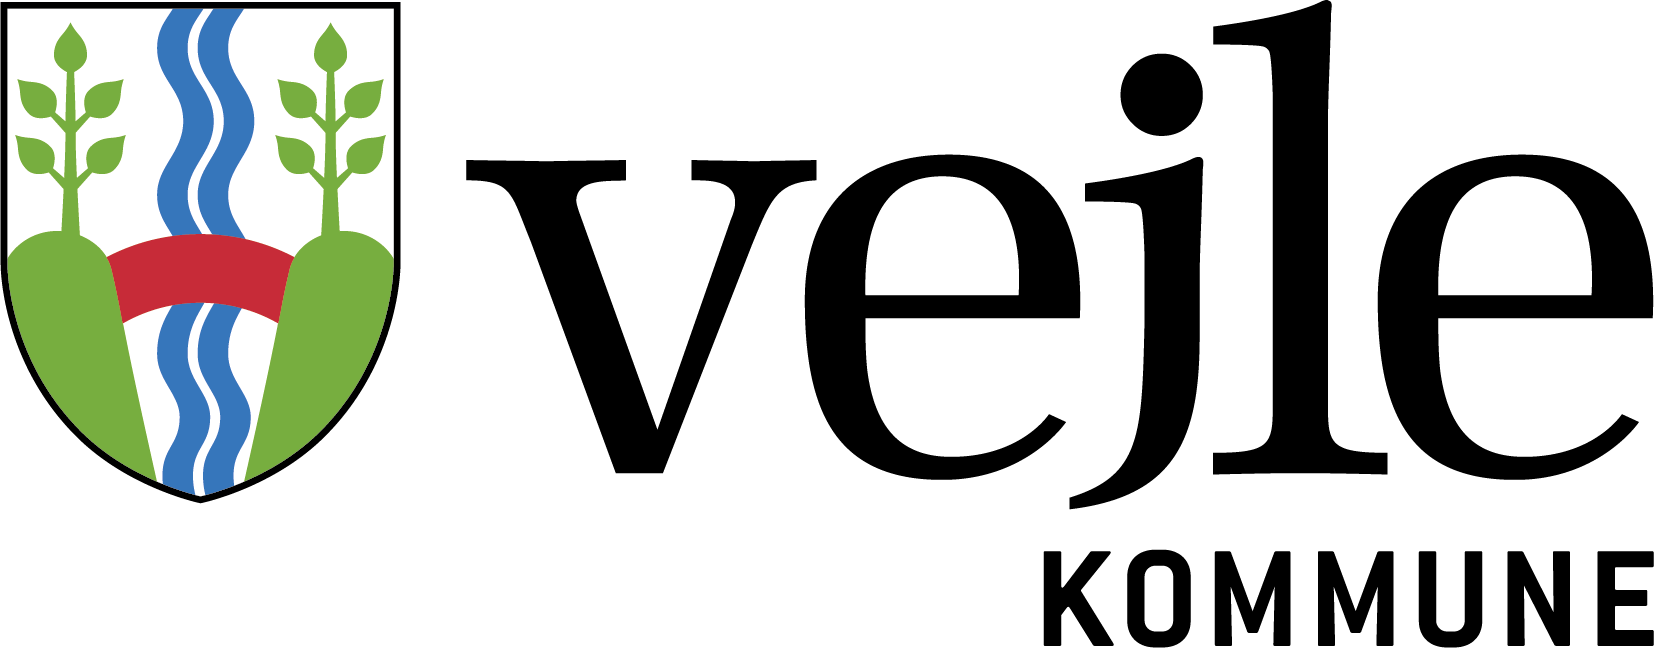 vejle kommune logo